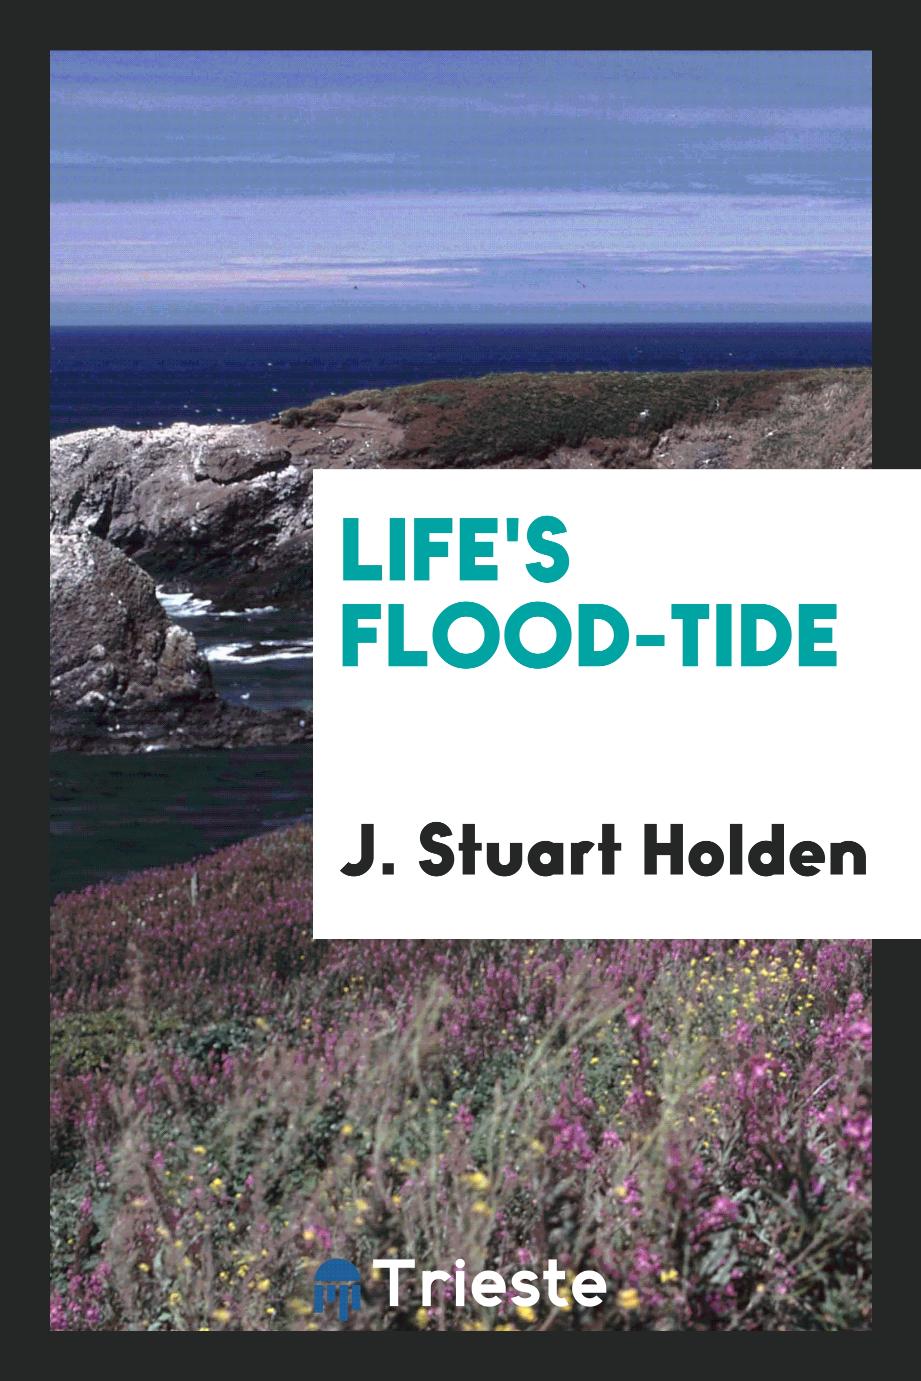 Life's flood-tide